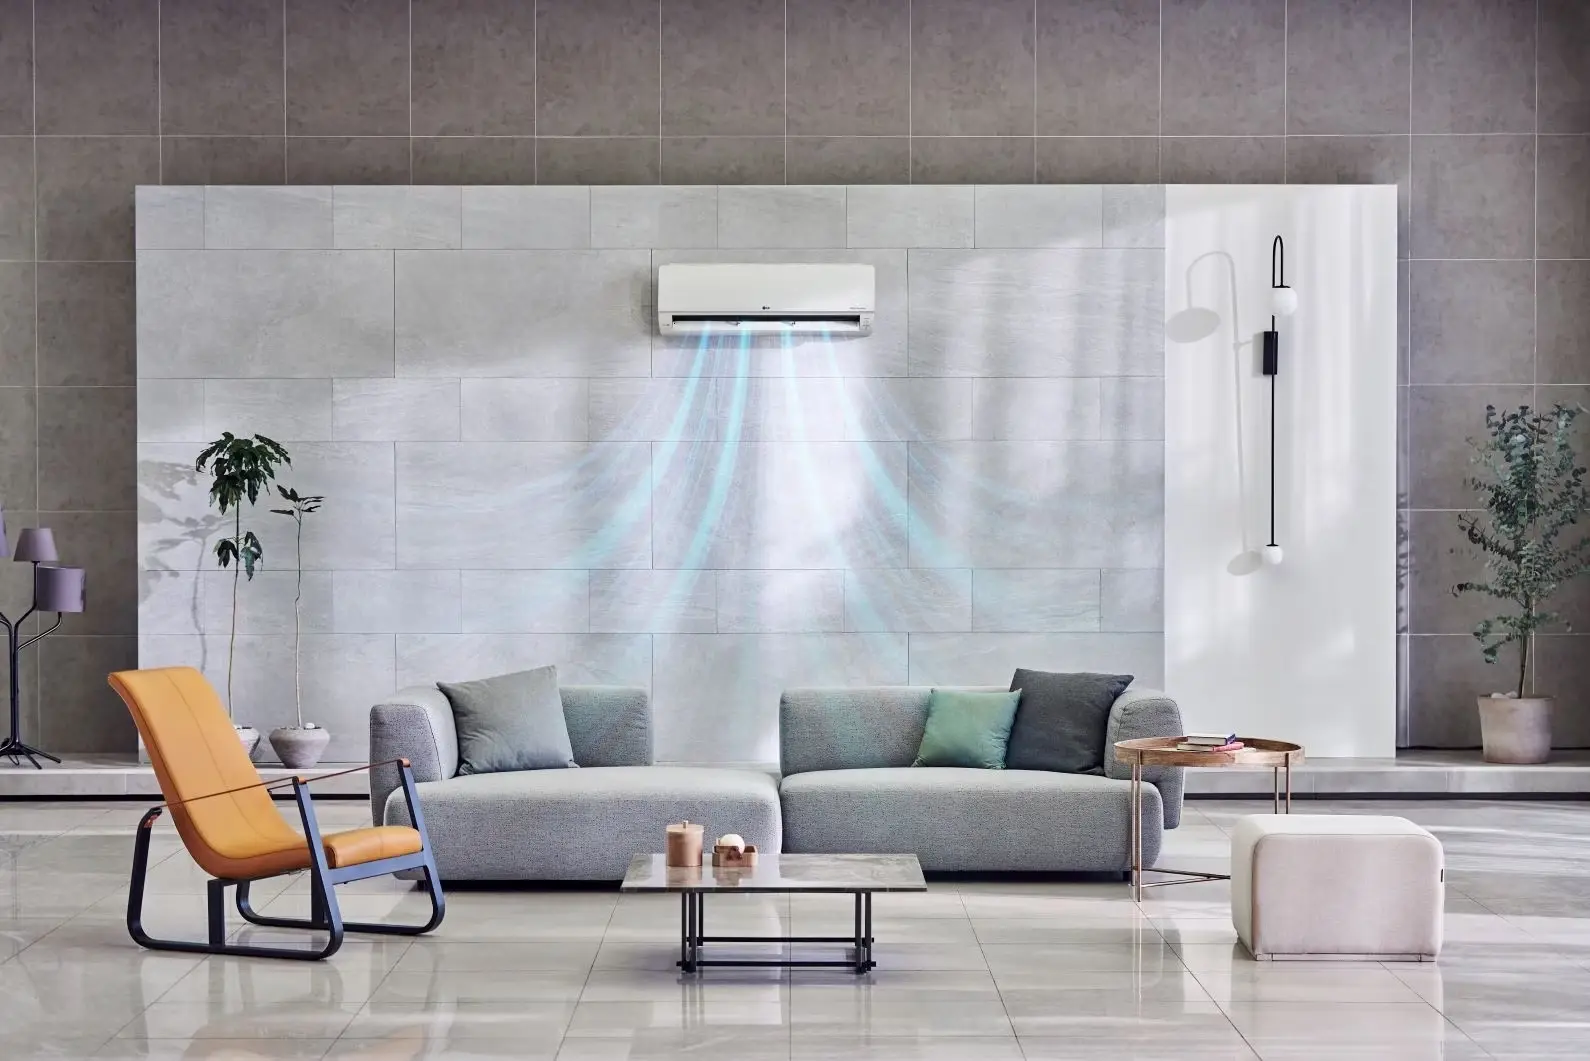 LG-DUALCOOL-in-aesthetic-livingroom